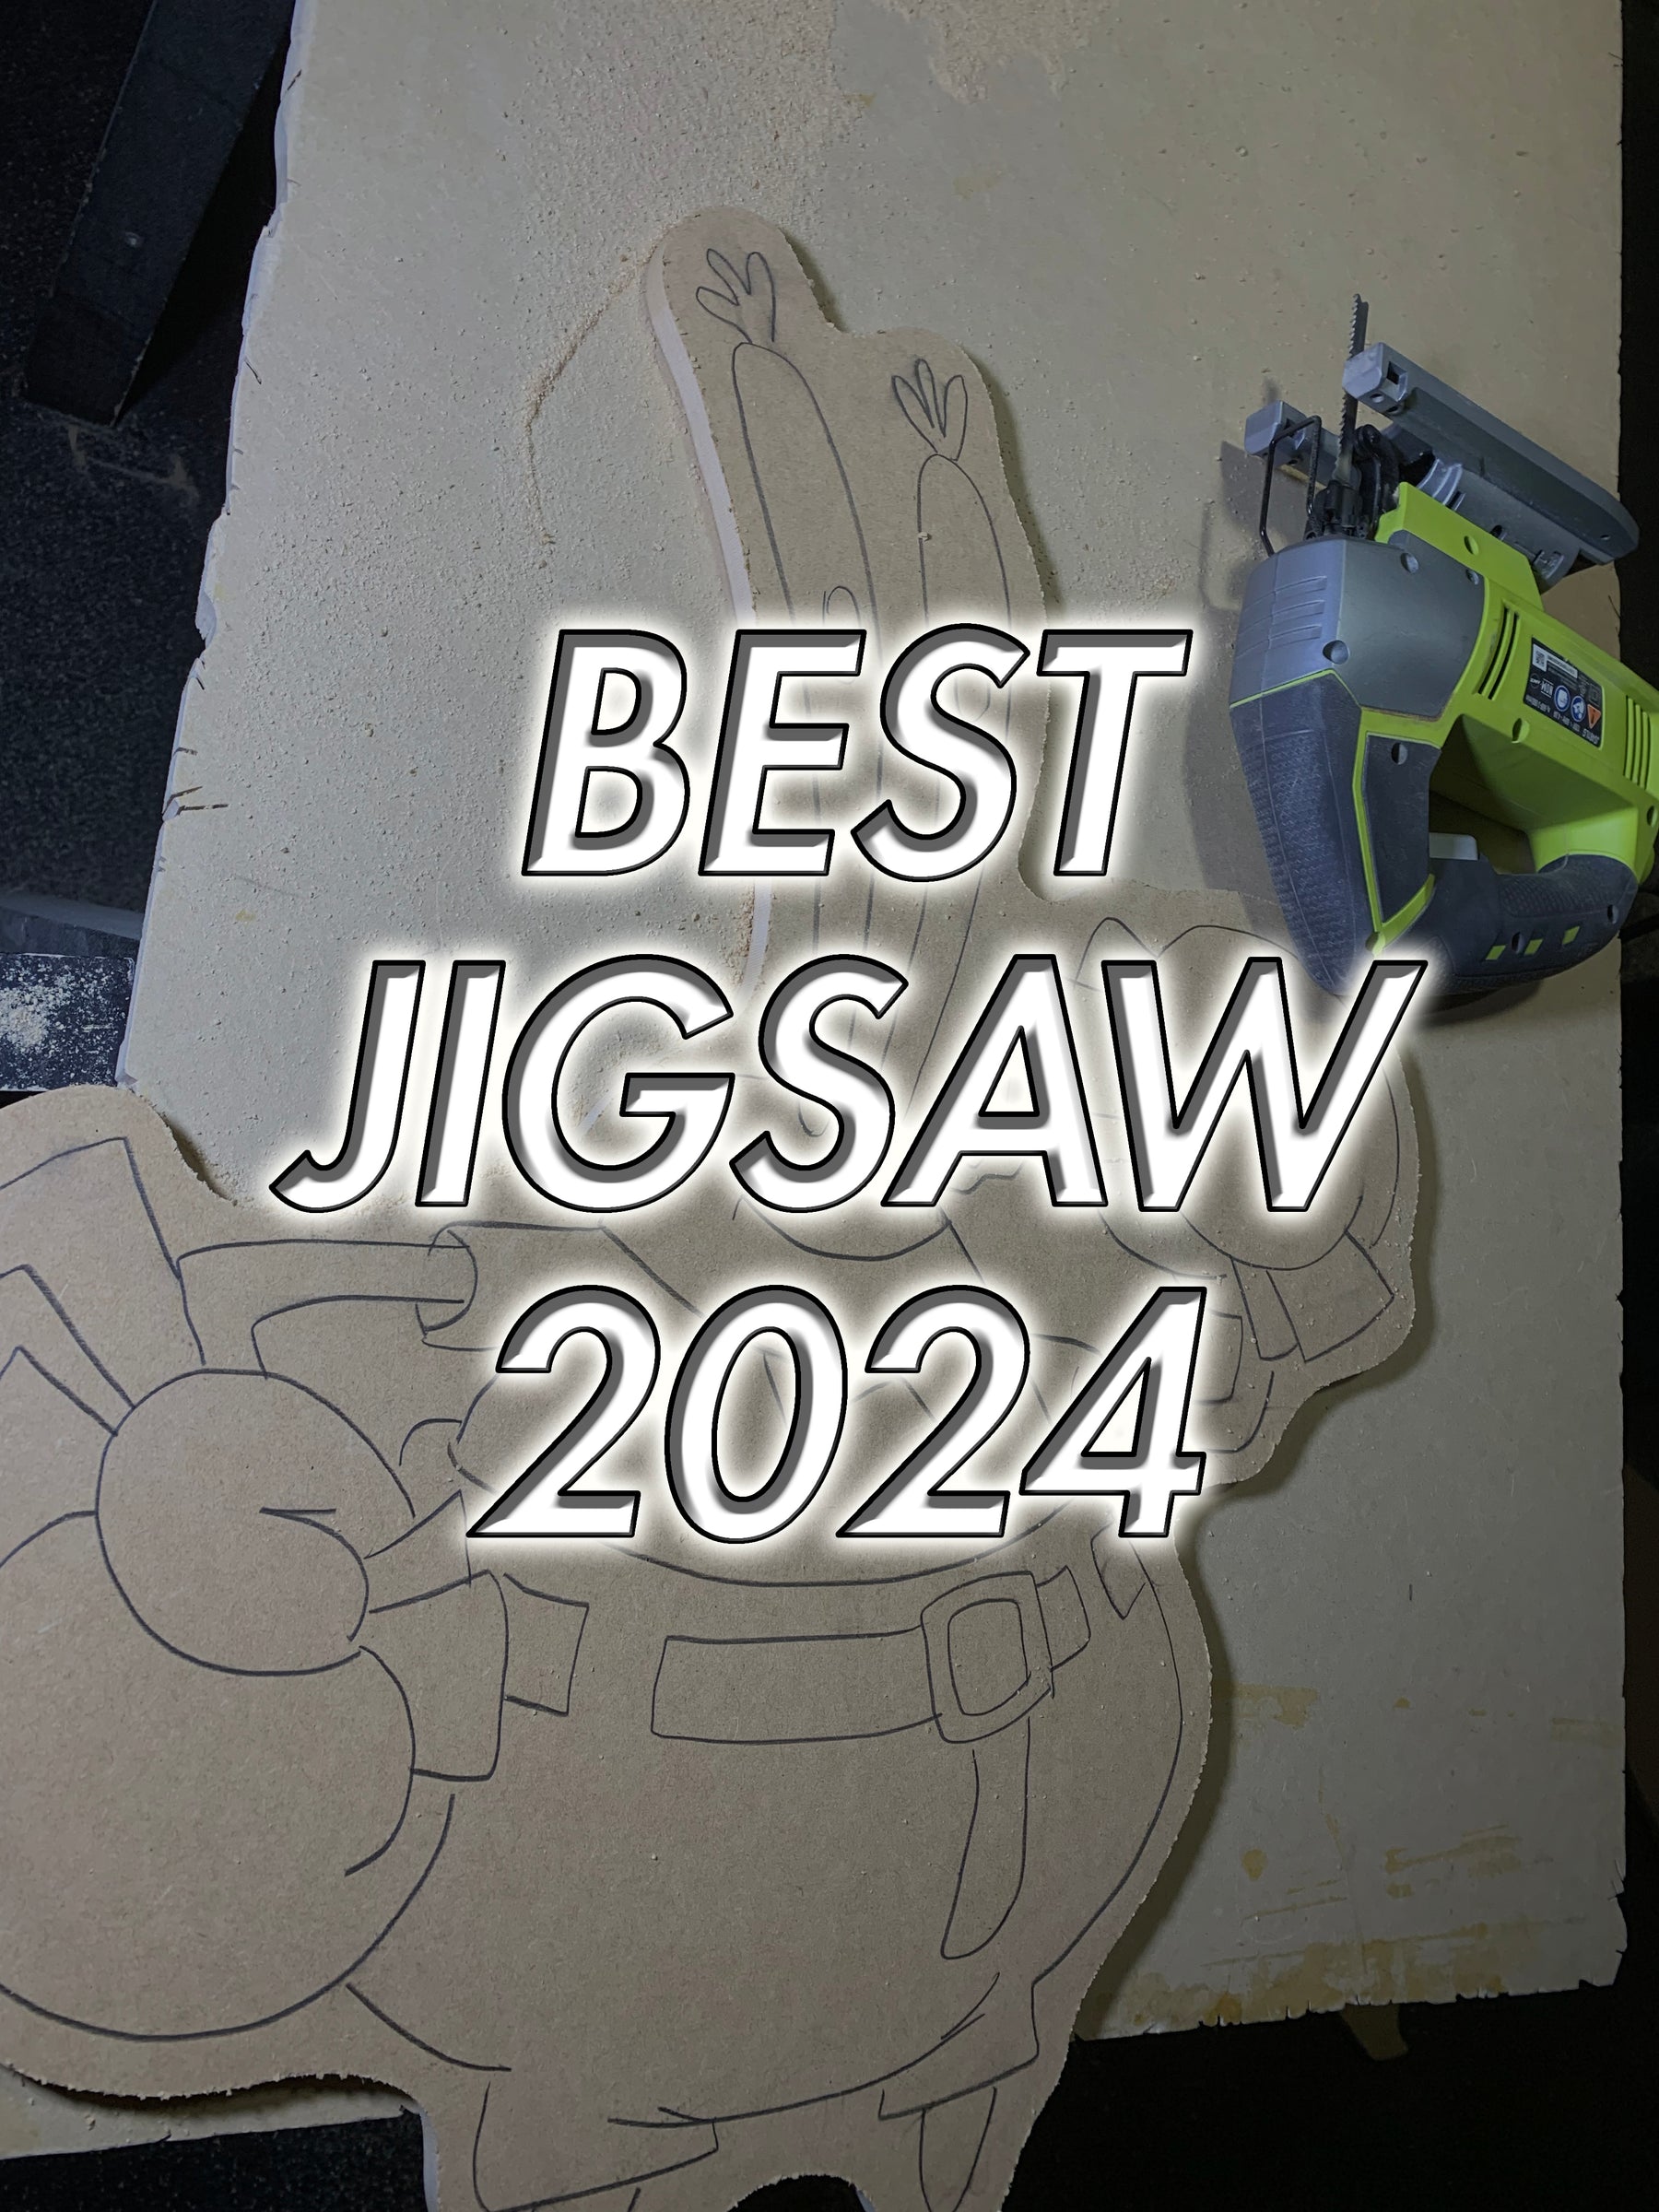 Best Jigsaws 2024